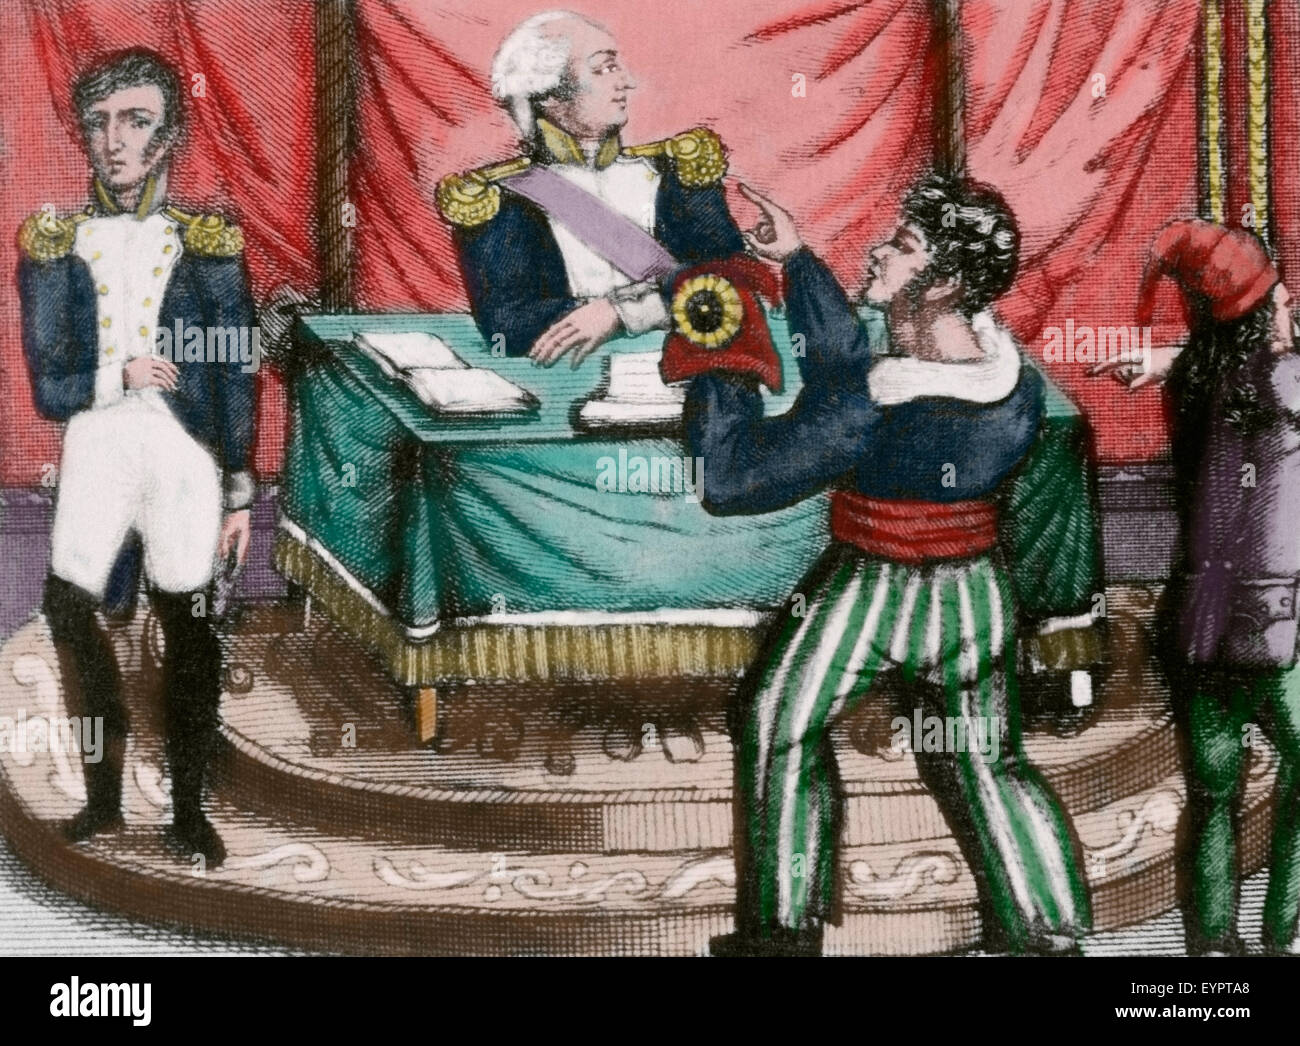 Französische Revolution. 1789-1799. Sansculottes bietet die phrygische Mütze,  symbol Revolution, an König Louis XVI (Presoner). Gravur. Farbige  Stockfotografie - Alamy